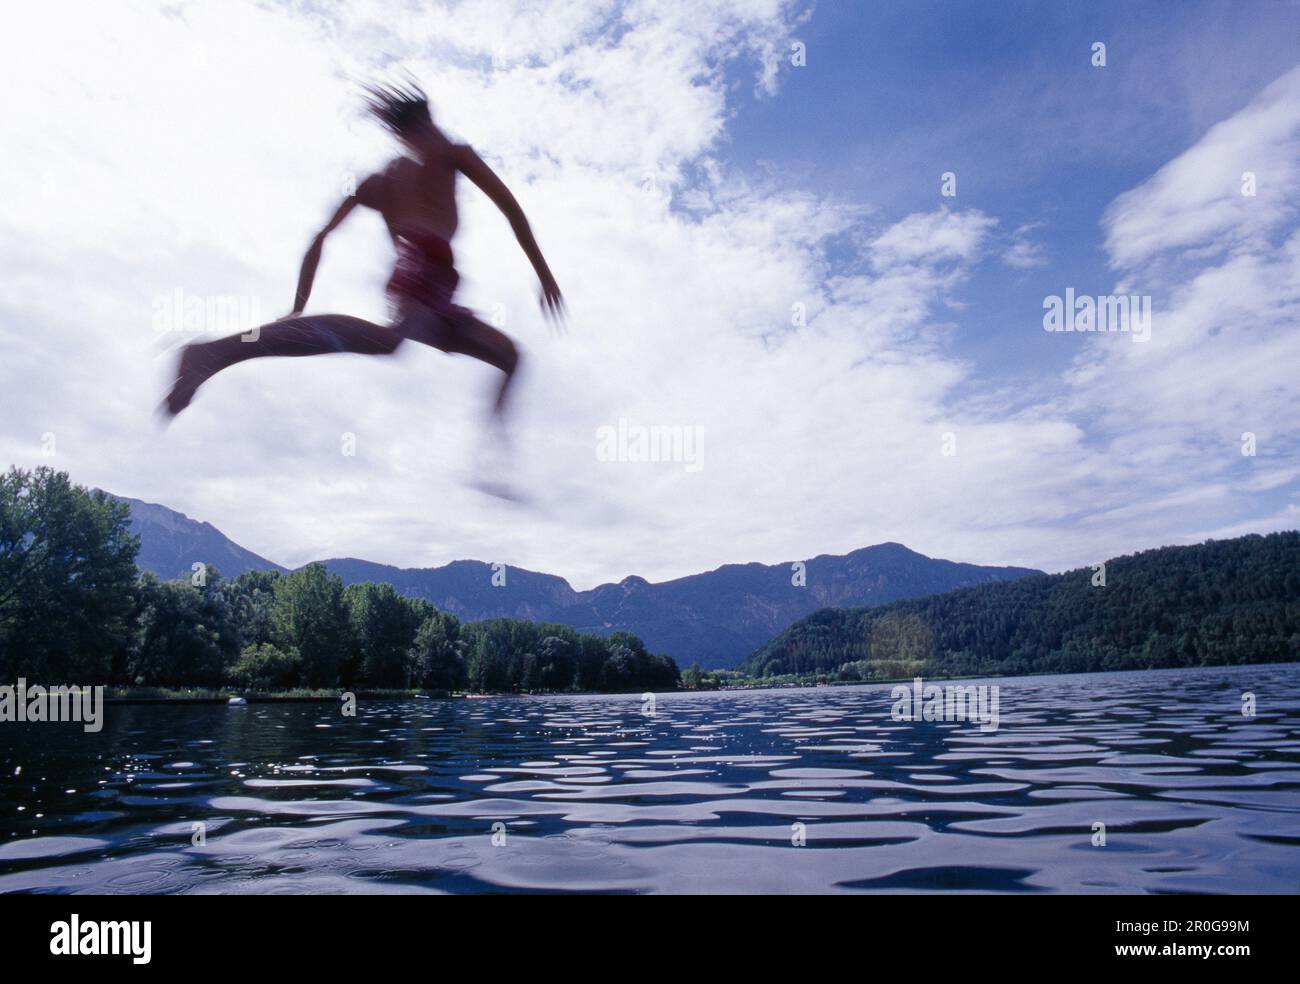 Joven saltando al lago de Levico, Valsugana, Trentino-Alto Adige/Südtirol, Italia Foto de stock